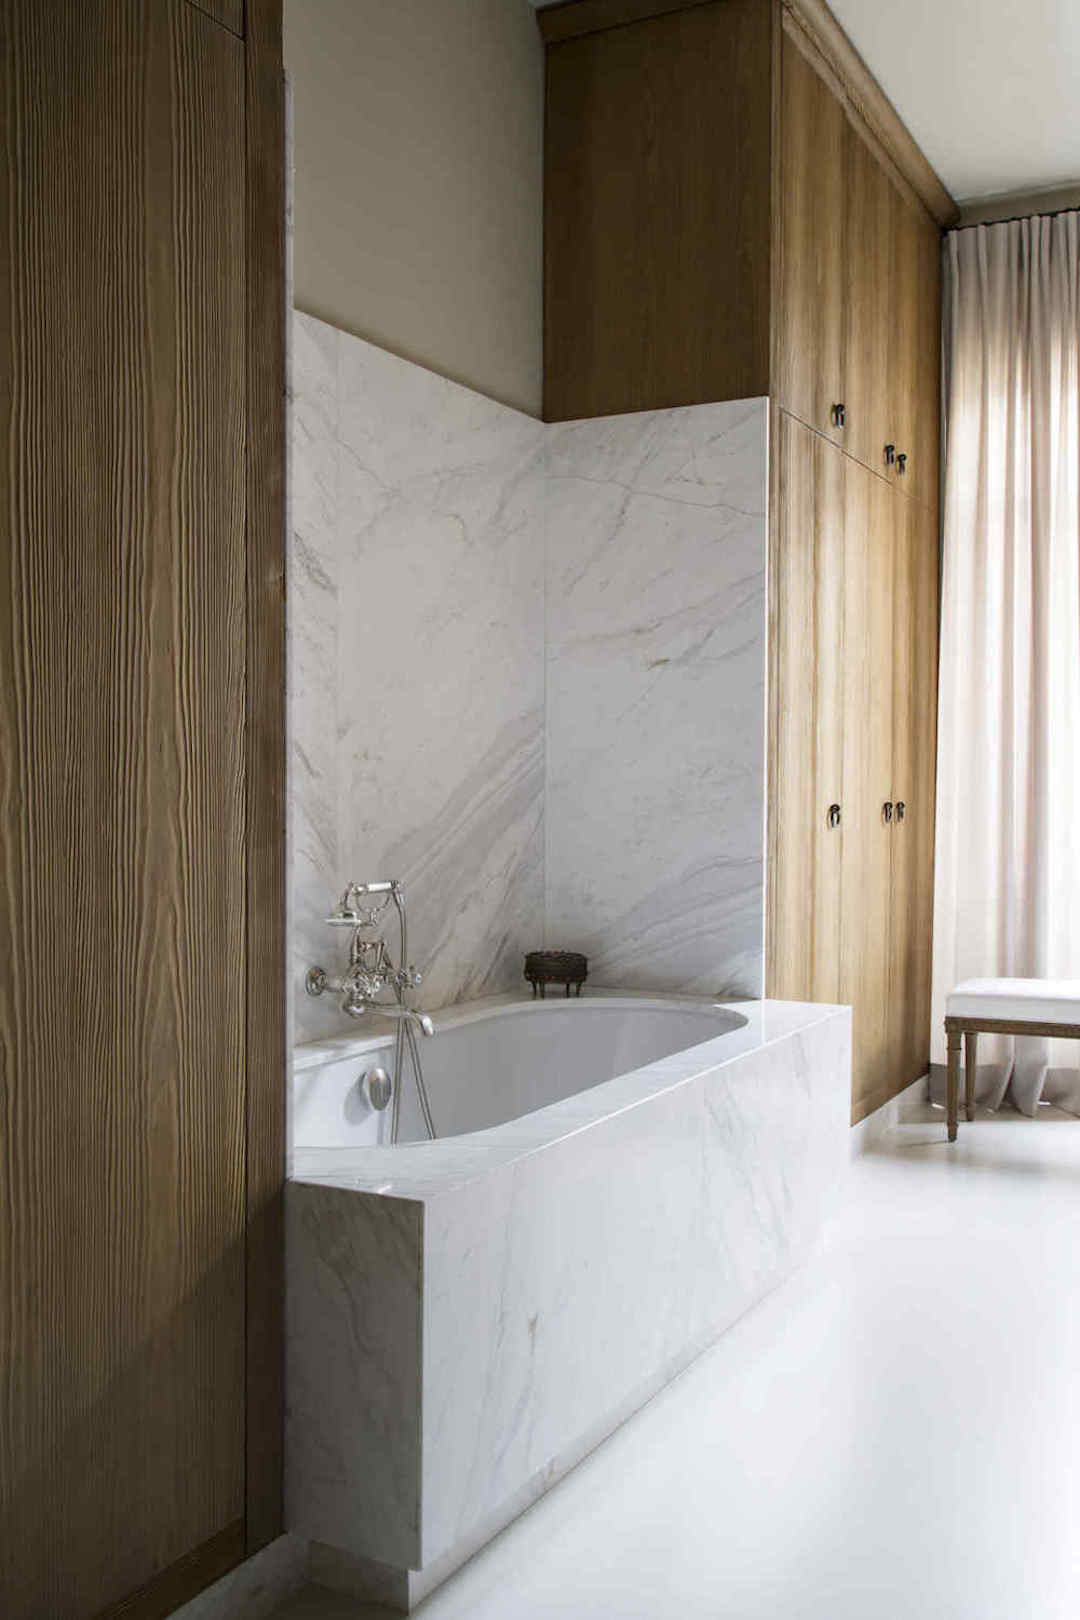 baignoire marbre blanc deco intérieure sobre élégante moderne mobilier bois clair